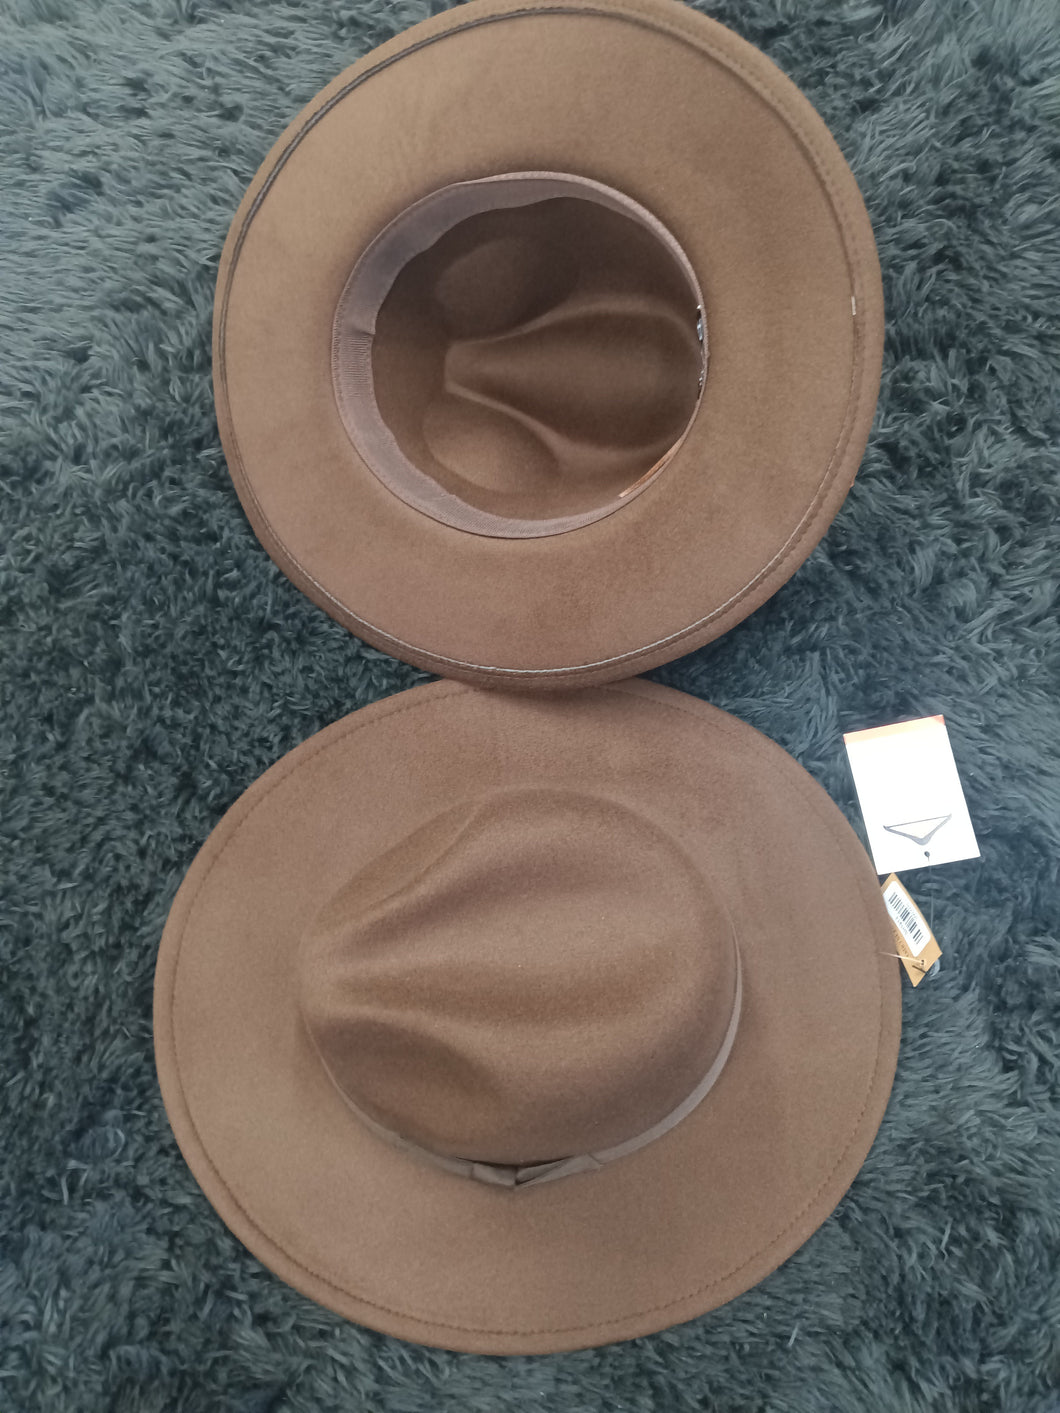 Brown Fedora Hat Solid Color Wide Brim Adjustable Strings inside Hat